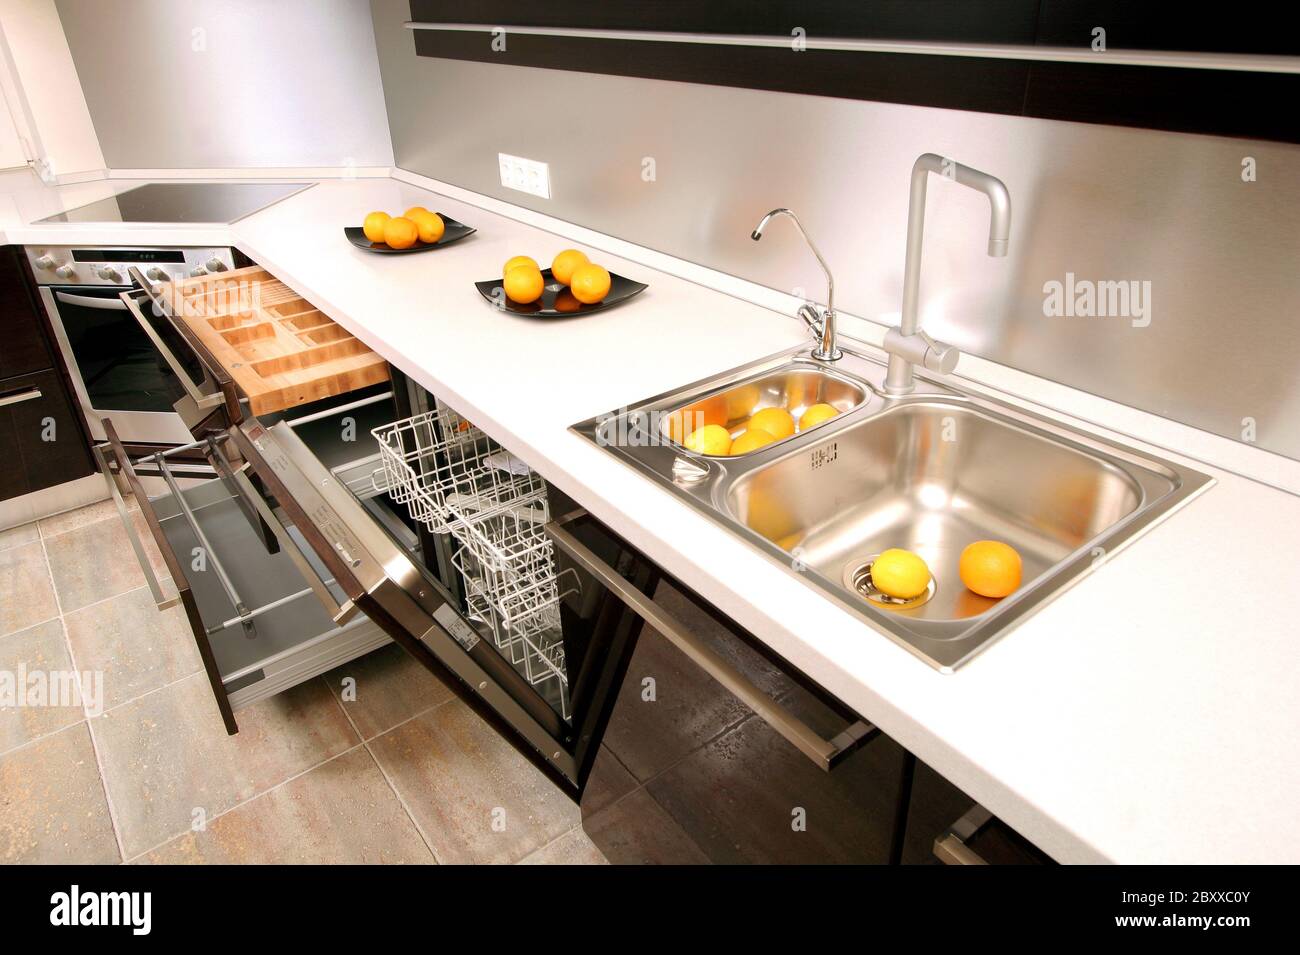 La cuisine moderne avec construit dans les appareils ménagers Banque D'Images